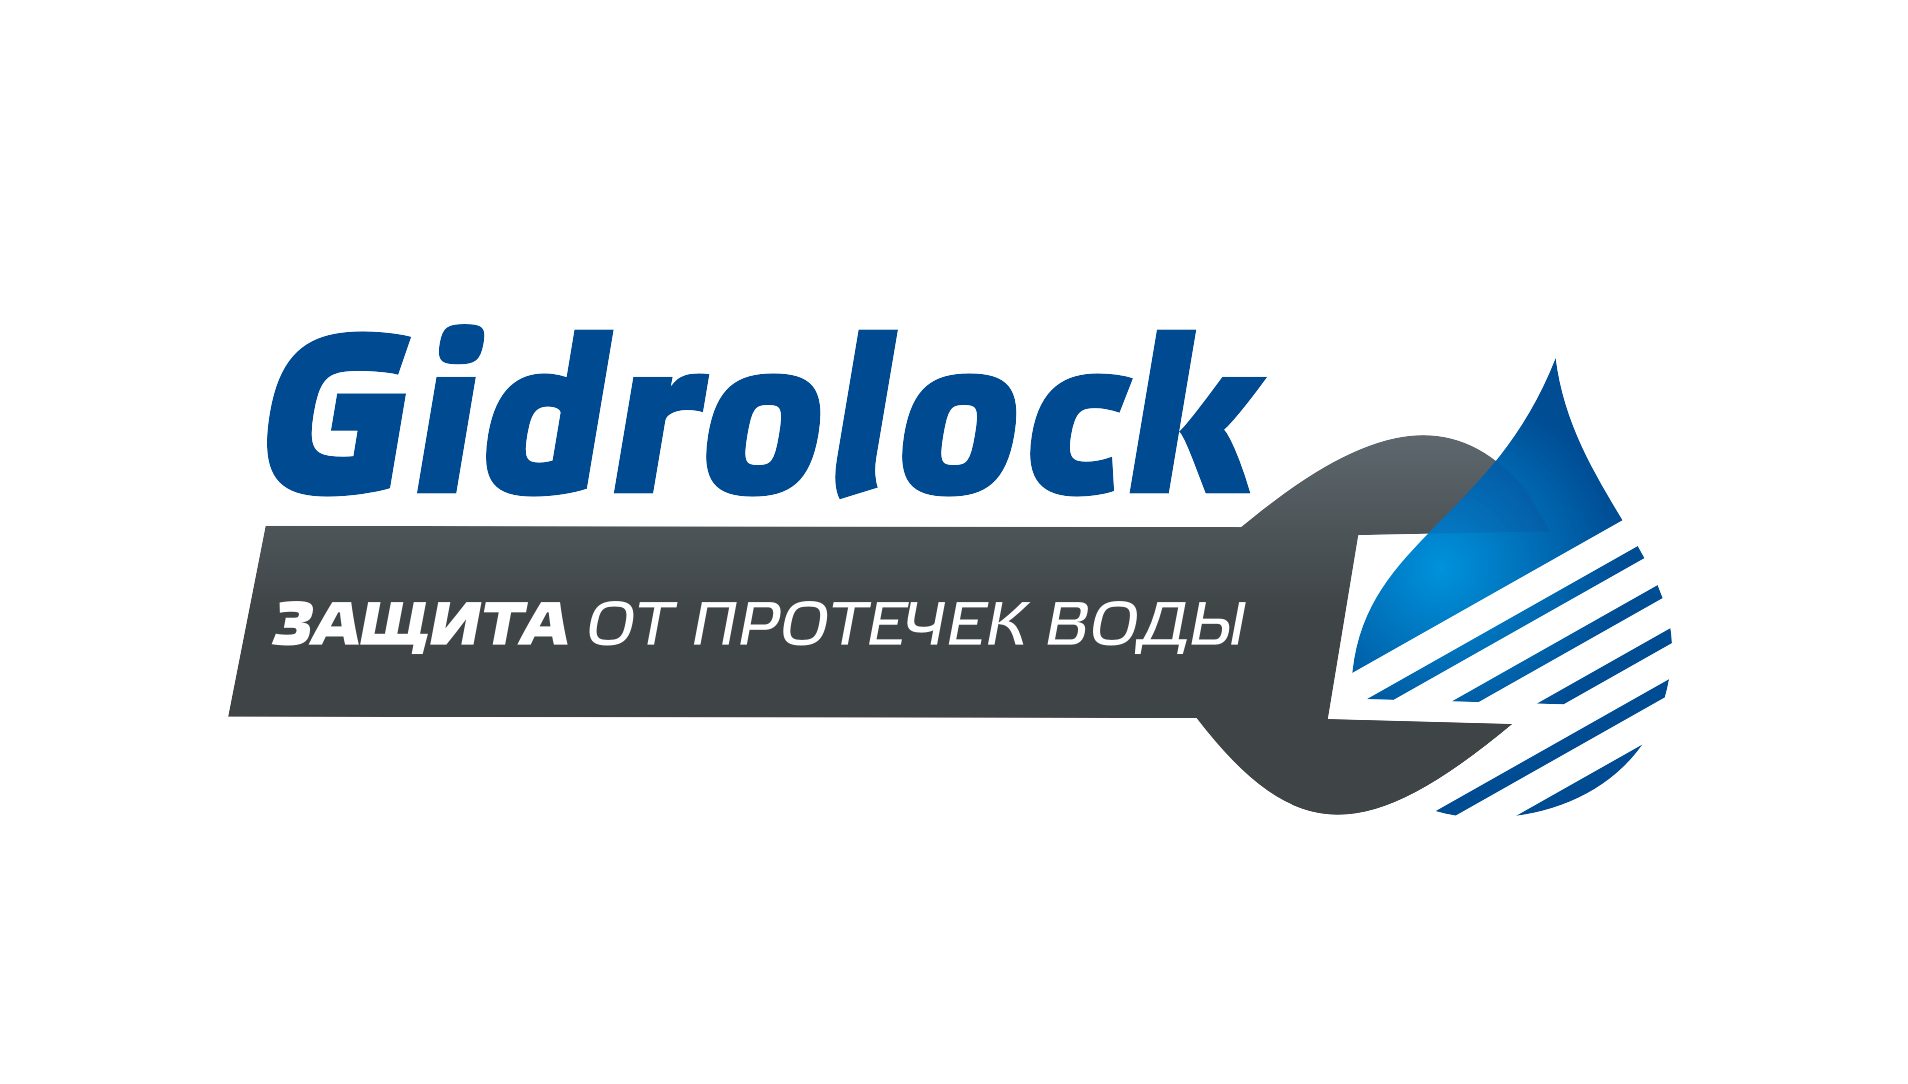 Gidrolock